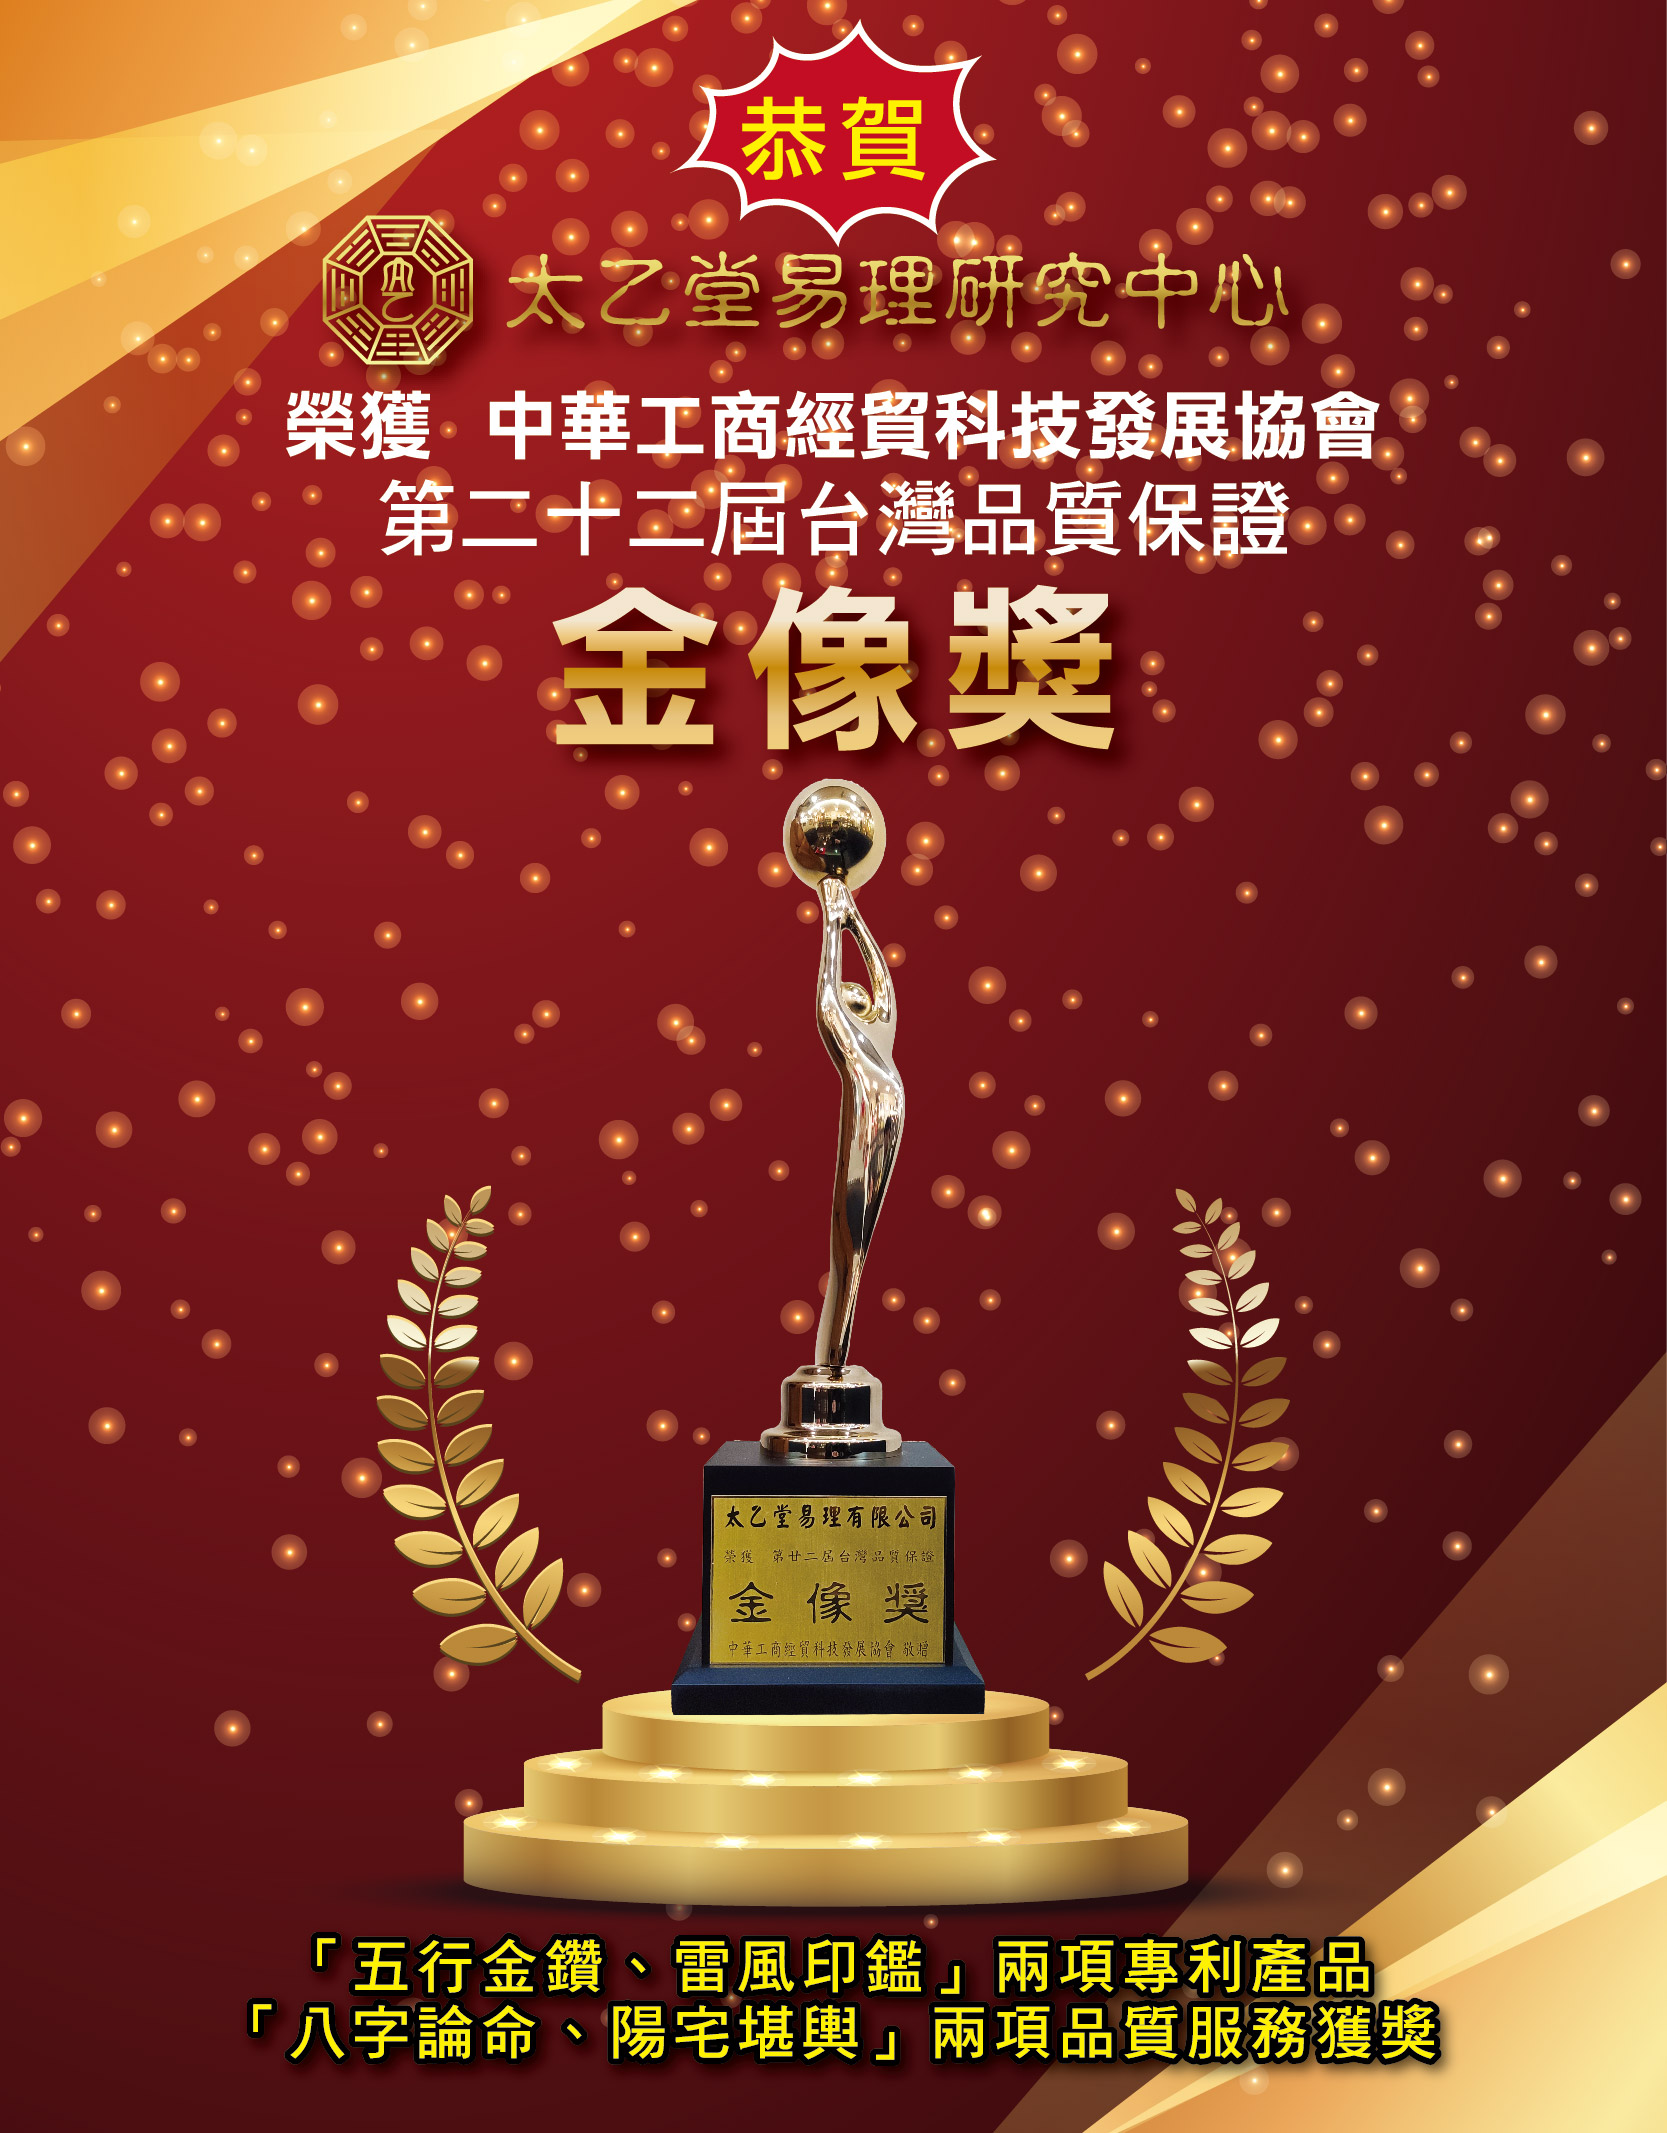 恭賀!!太乙堂榮獲第二十二屆台灣品質保證金像獎的殊榮